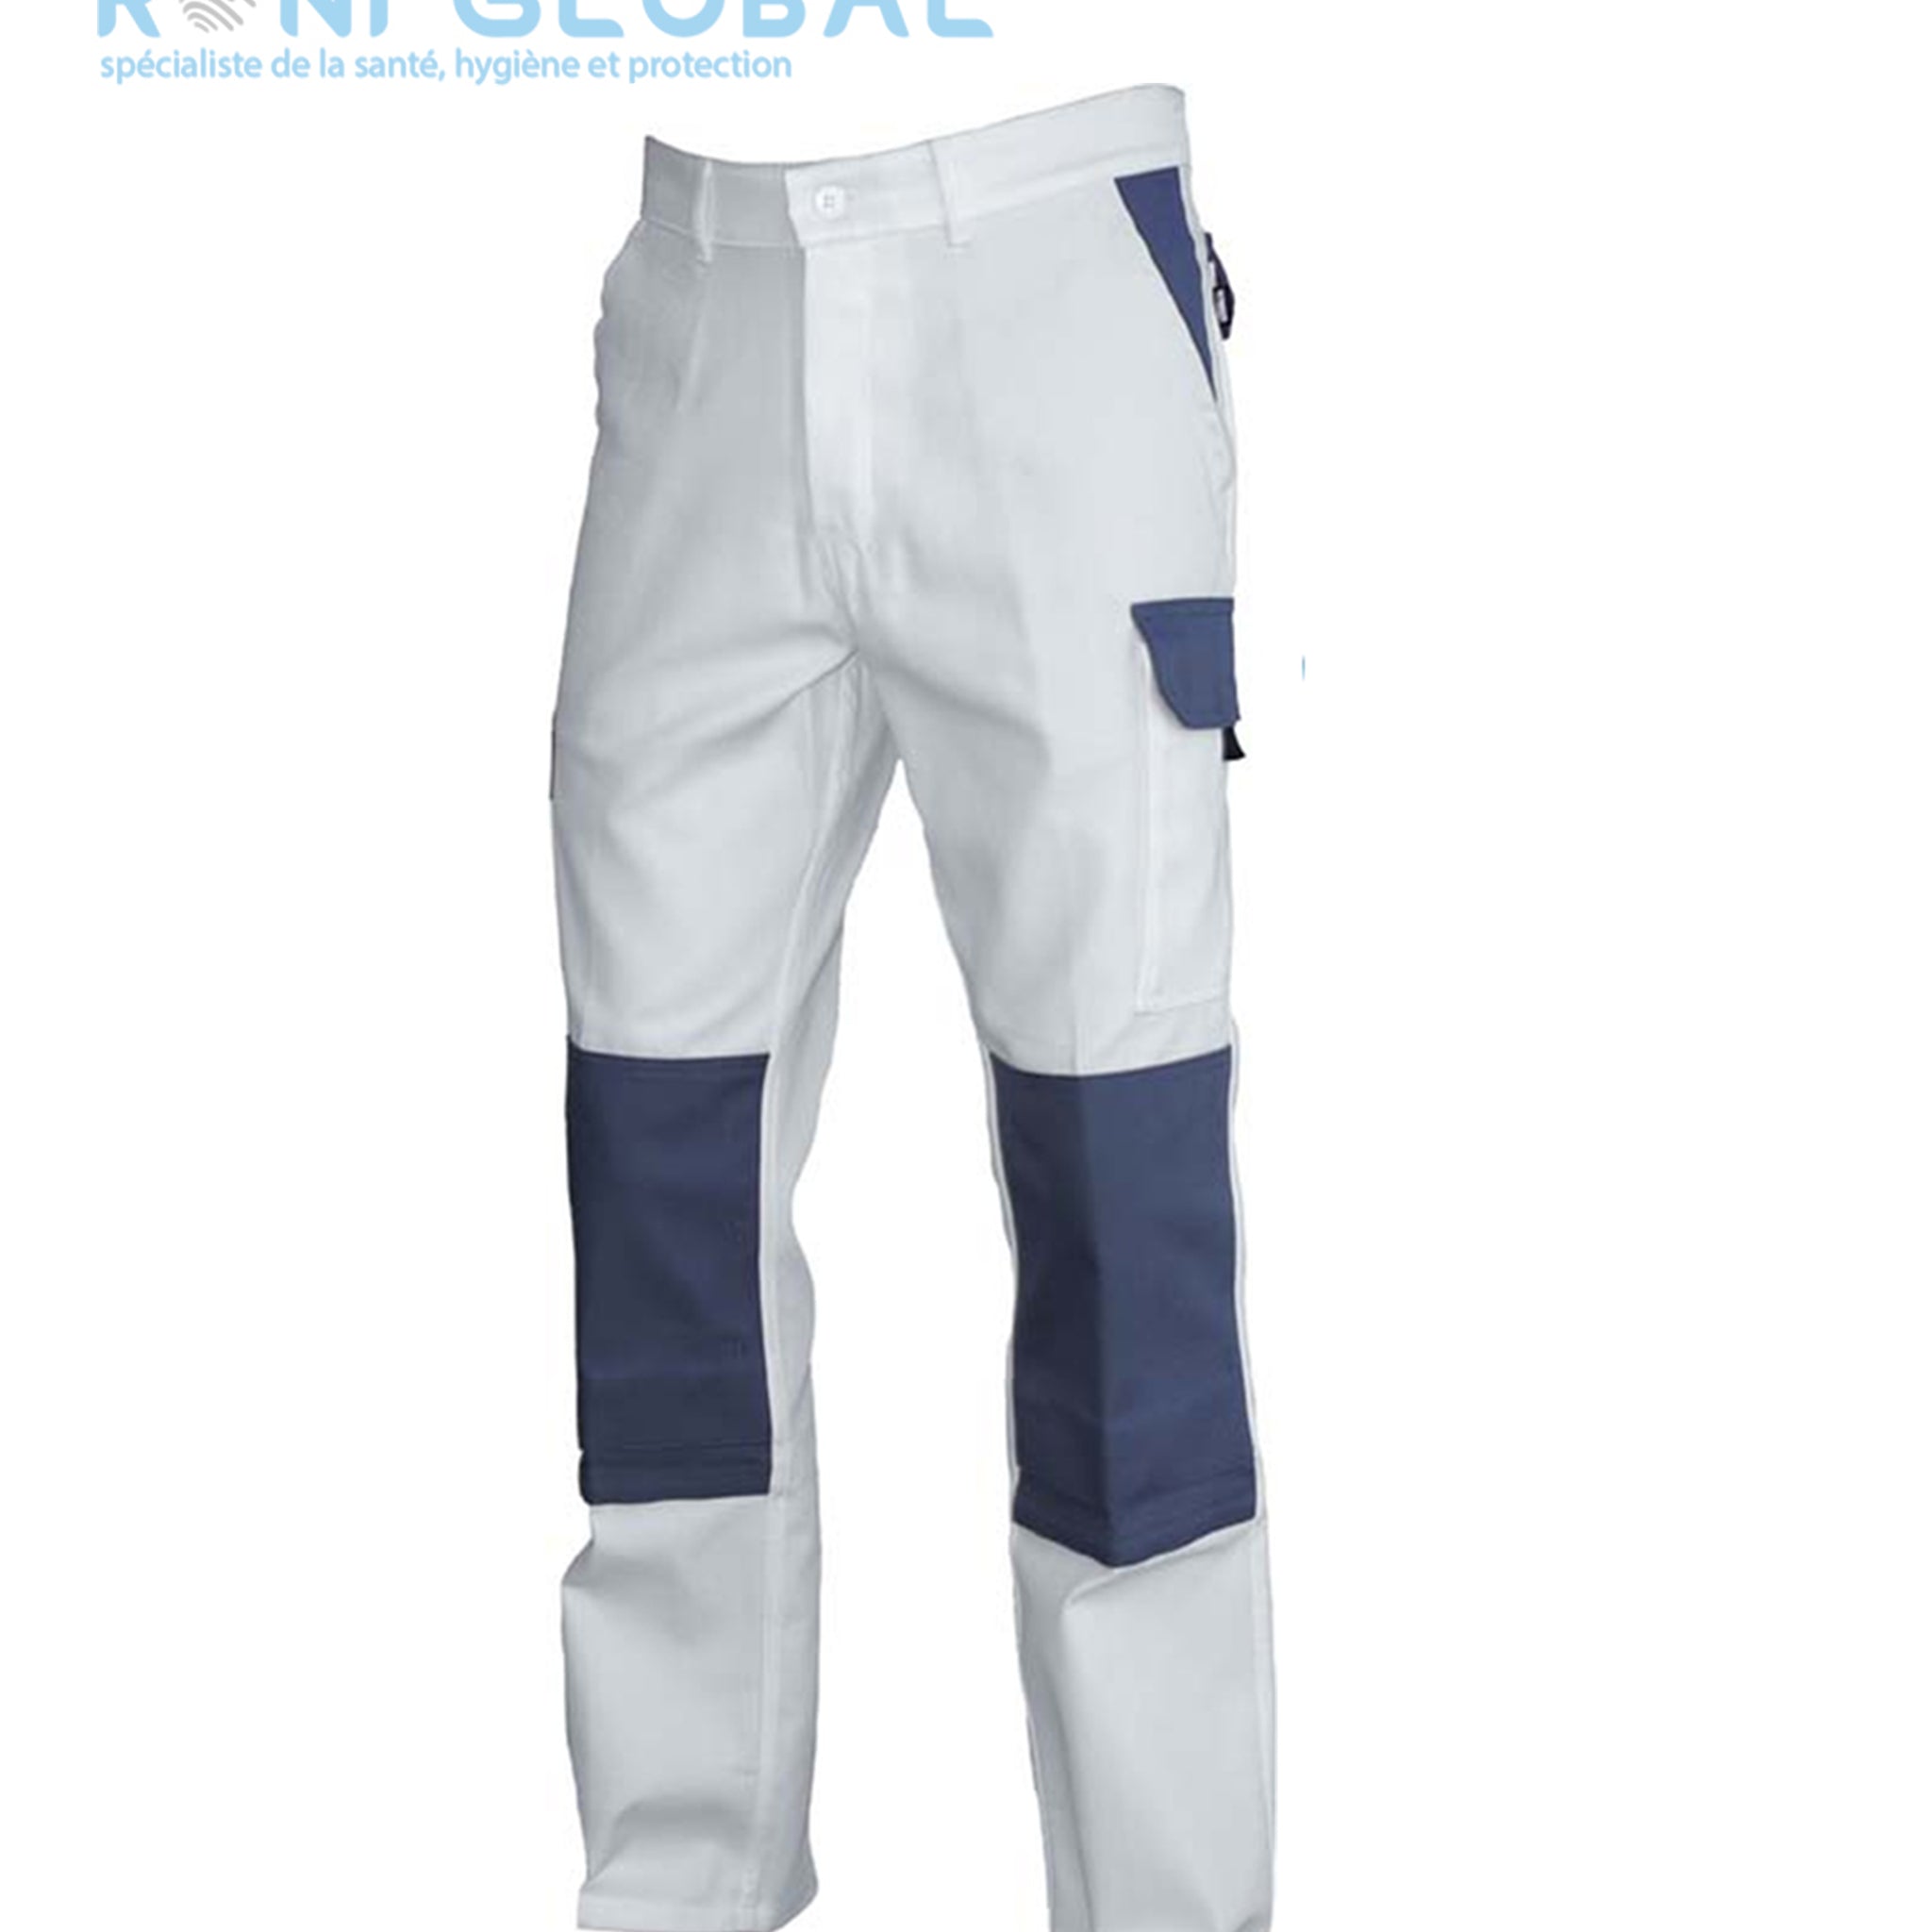 Pantalon de travail blanc avec protection genoux en coton/polyester 6 poches - PANTALON PG LENNY BLANC PBV